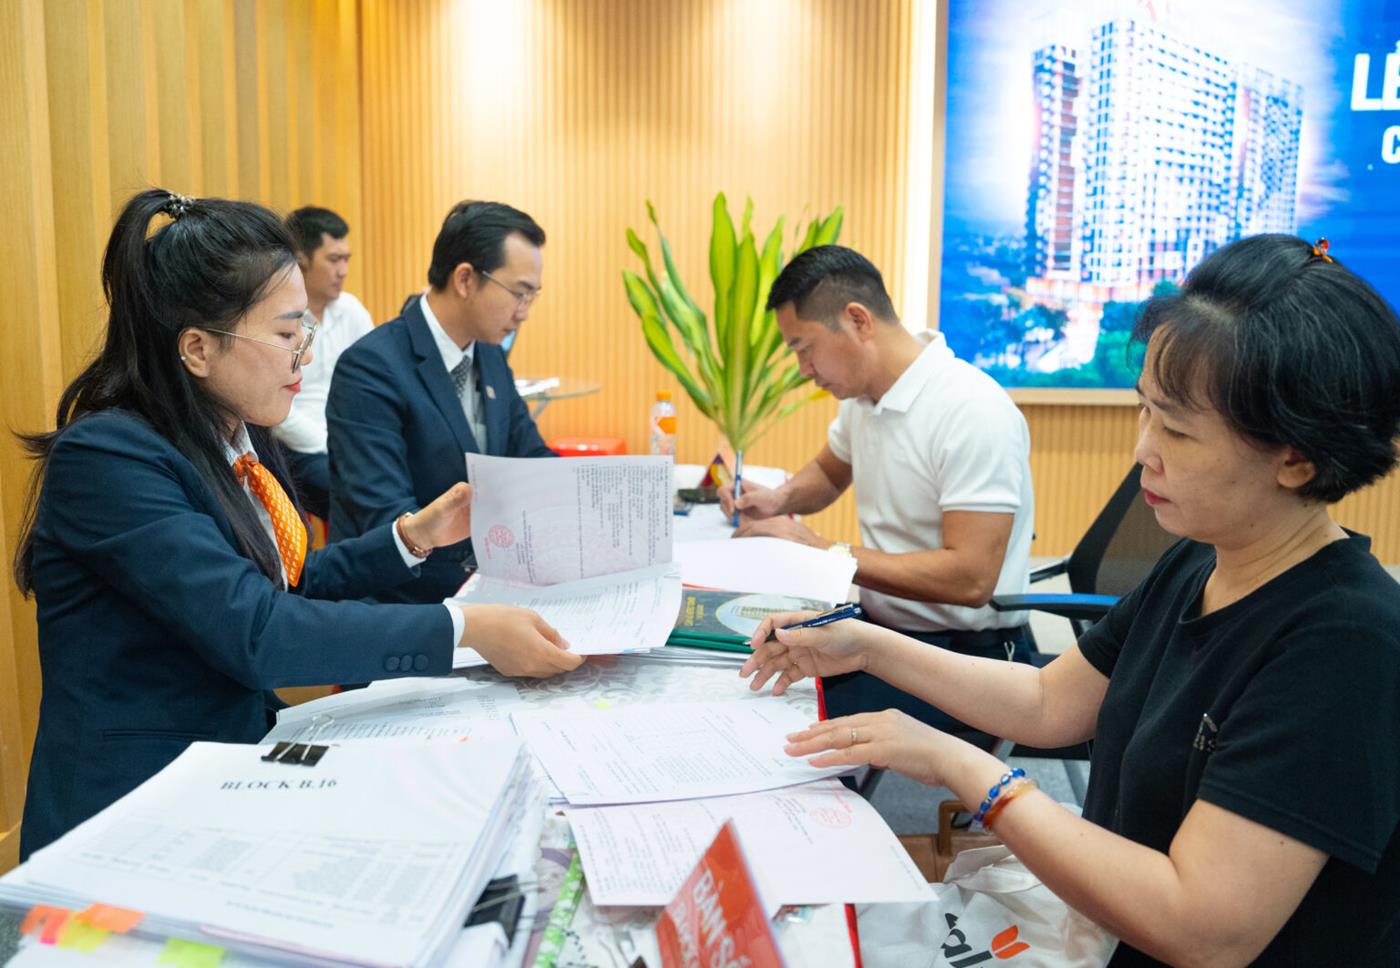 Khách hàng hoàn tất các thủ tục nhận sổ hồng căn hộ tại trụ sở Kim Oanh Group.